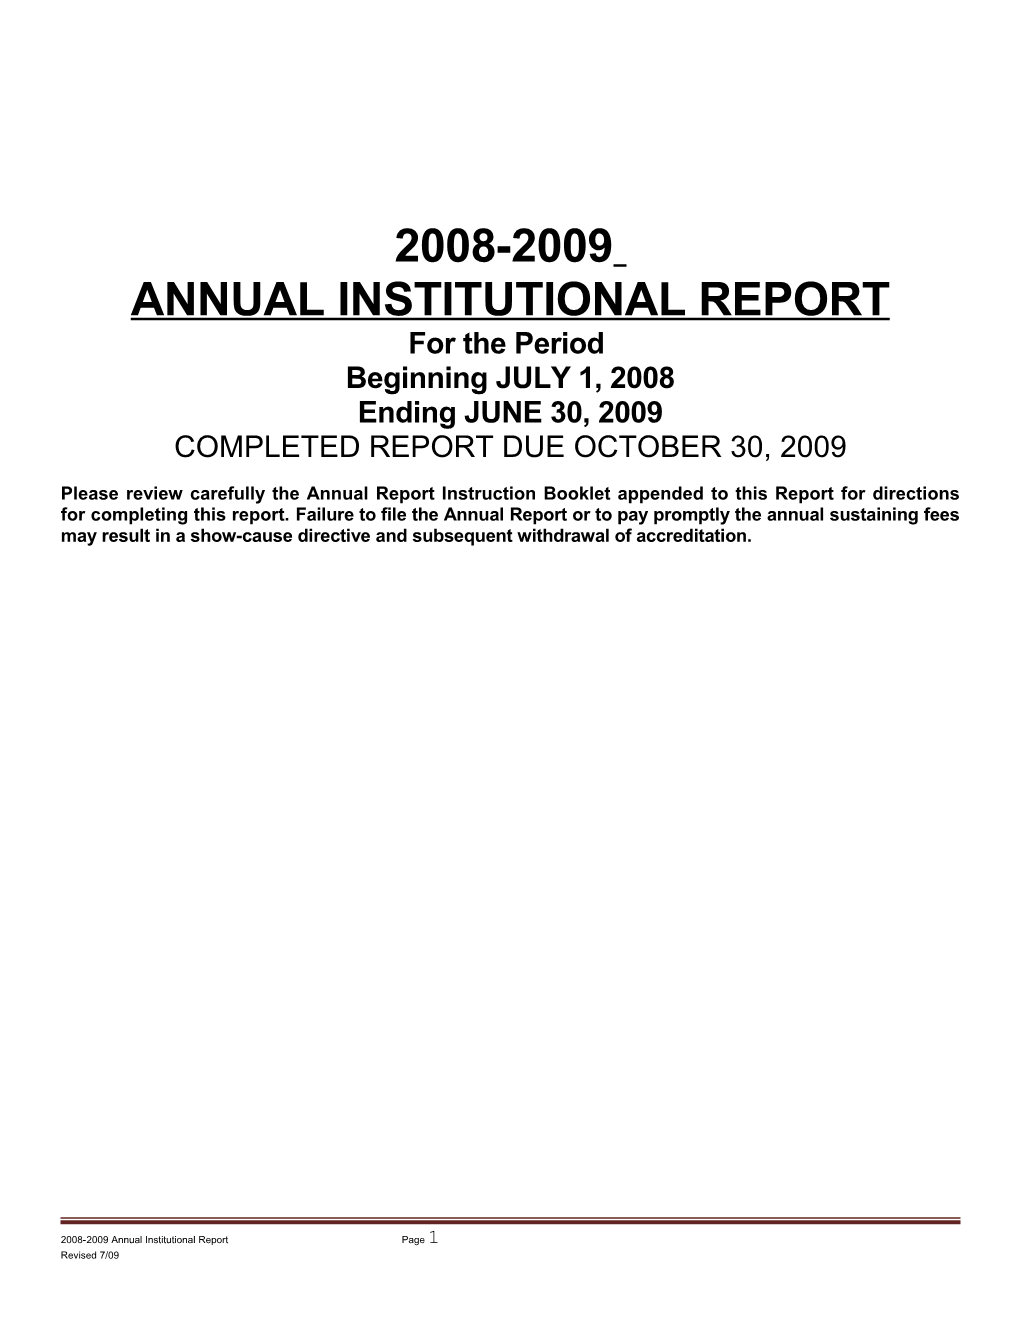 Annual Institutional Report